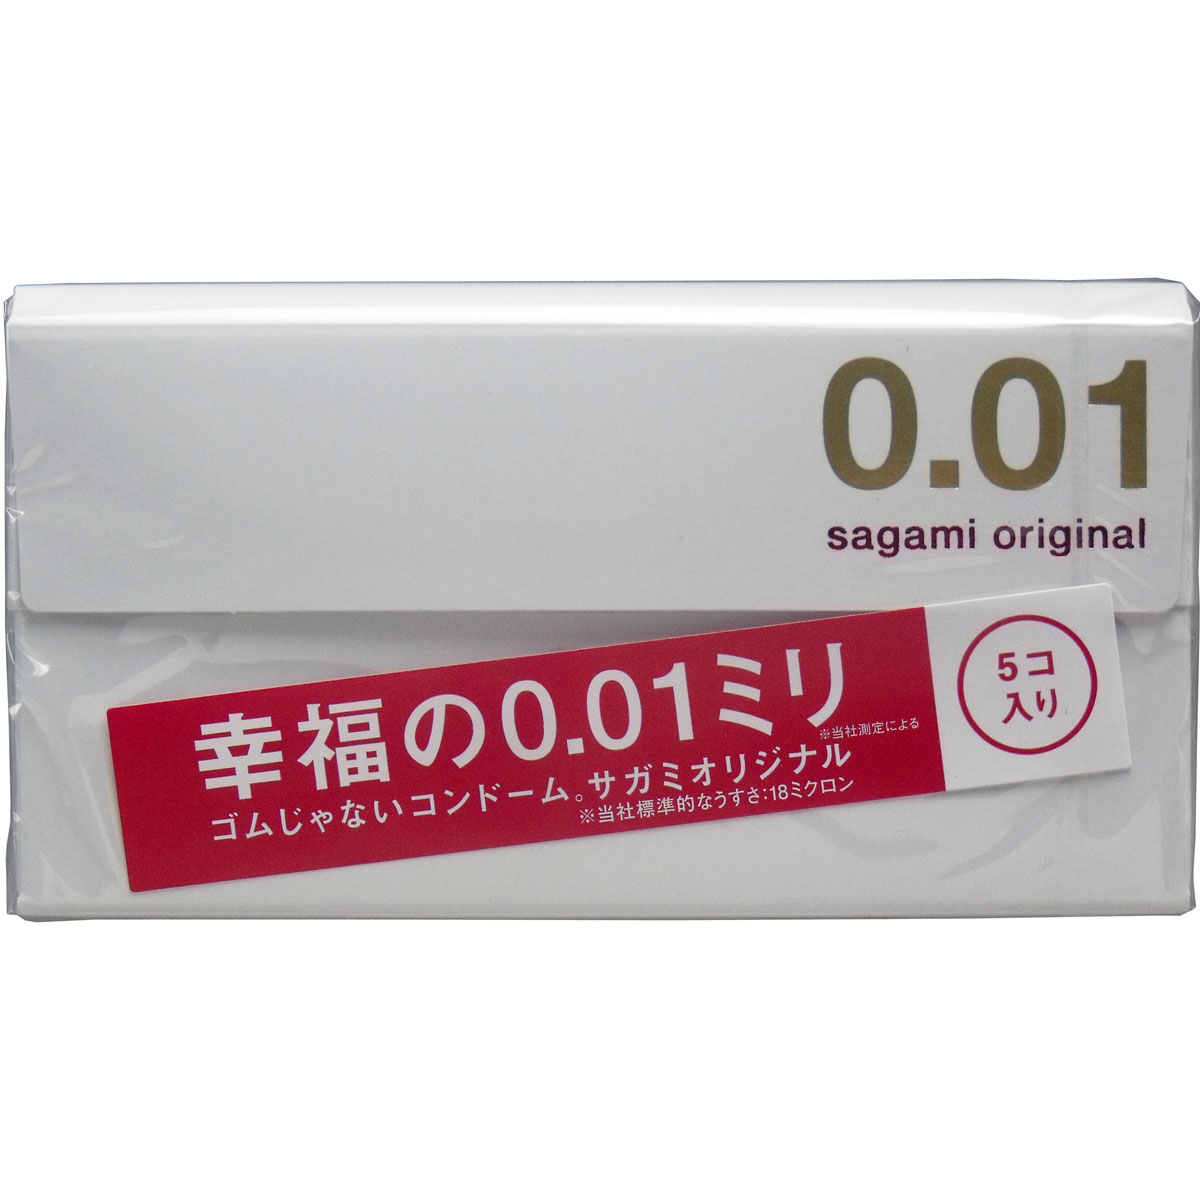 サガミオリジナル0.01 コンドーム 5個入 sagami 001 | 即納ドラッグ 金太郎SHOP